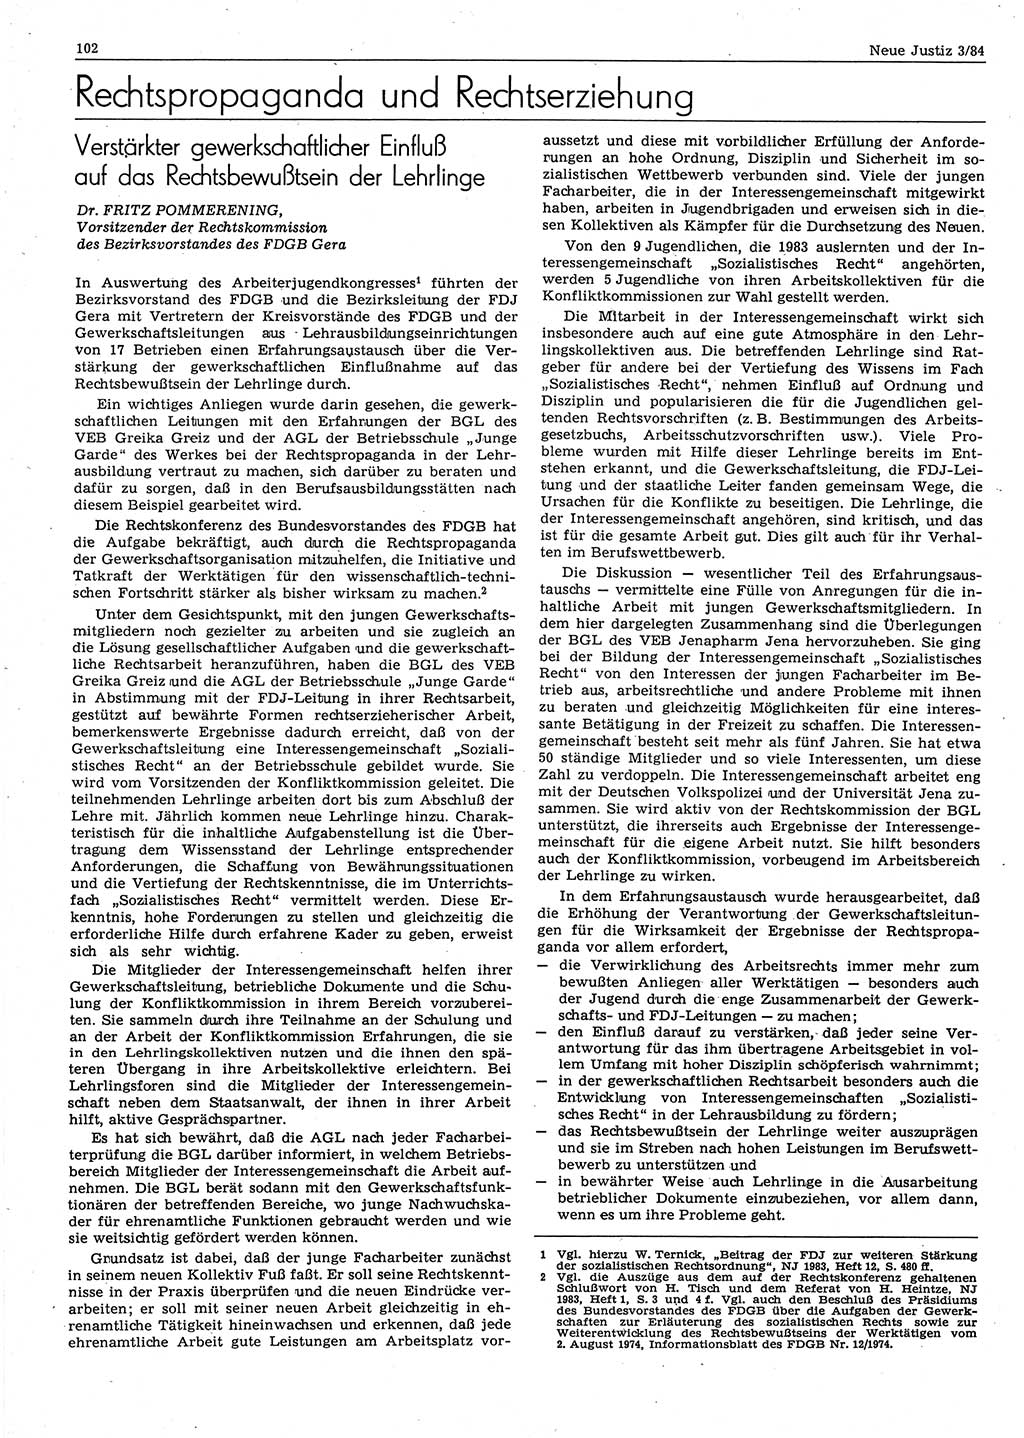 Neue Justiz (NJ), Zeitschrift für sozialistisches Recht und Gesetzlichkeit [Deutsche Demokratische Republik (DDR)], 38. Jahrgang 1984, Seite 102 (NJ DDR 1984, S. 102)